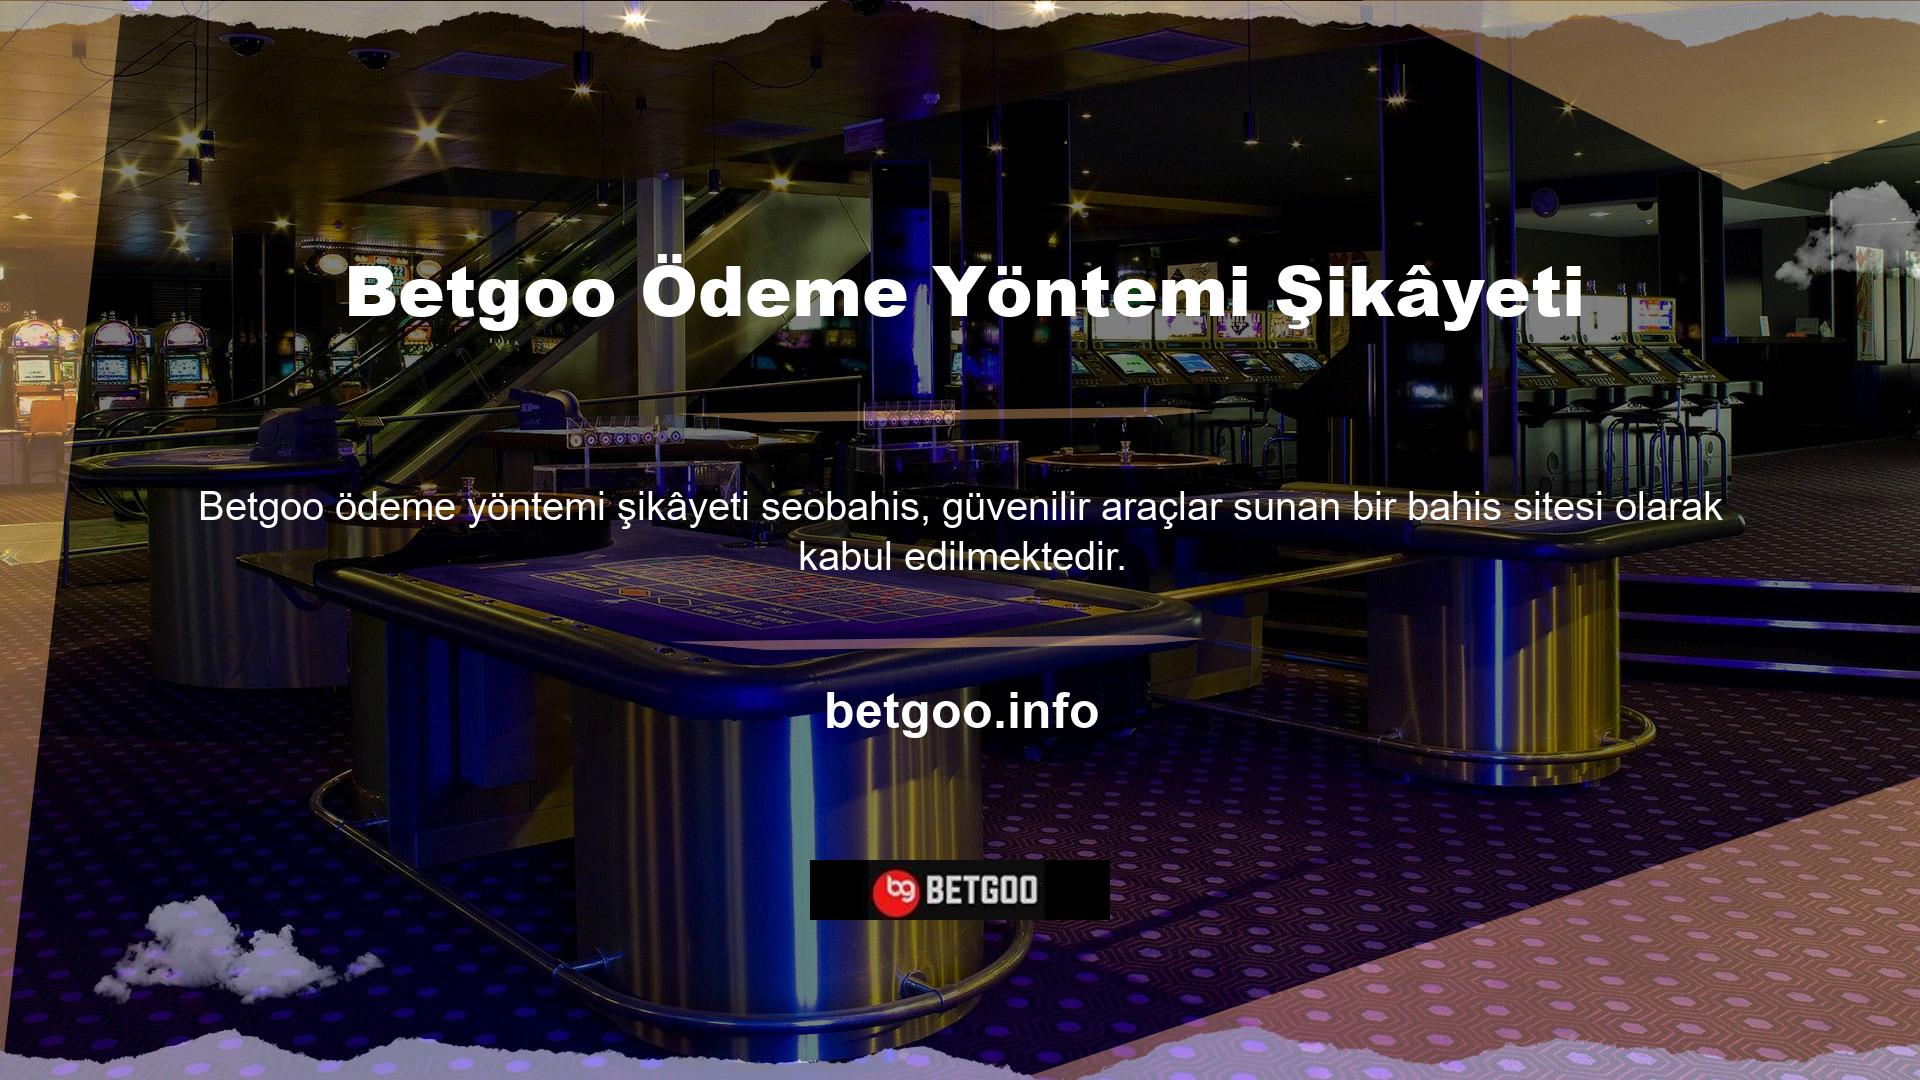 Betgoo ödeme sistemi aracılığıyla anonim yatırımcıların memnuniyetsizliği